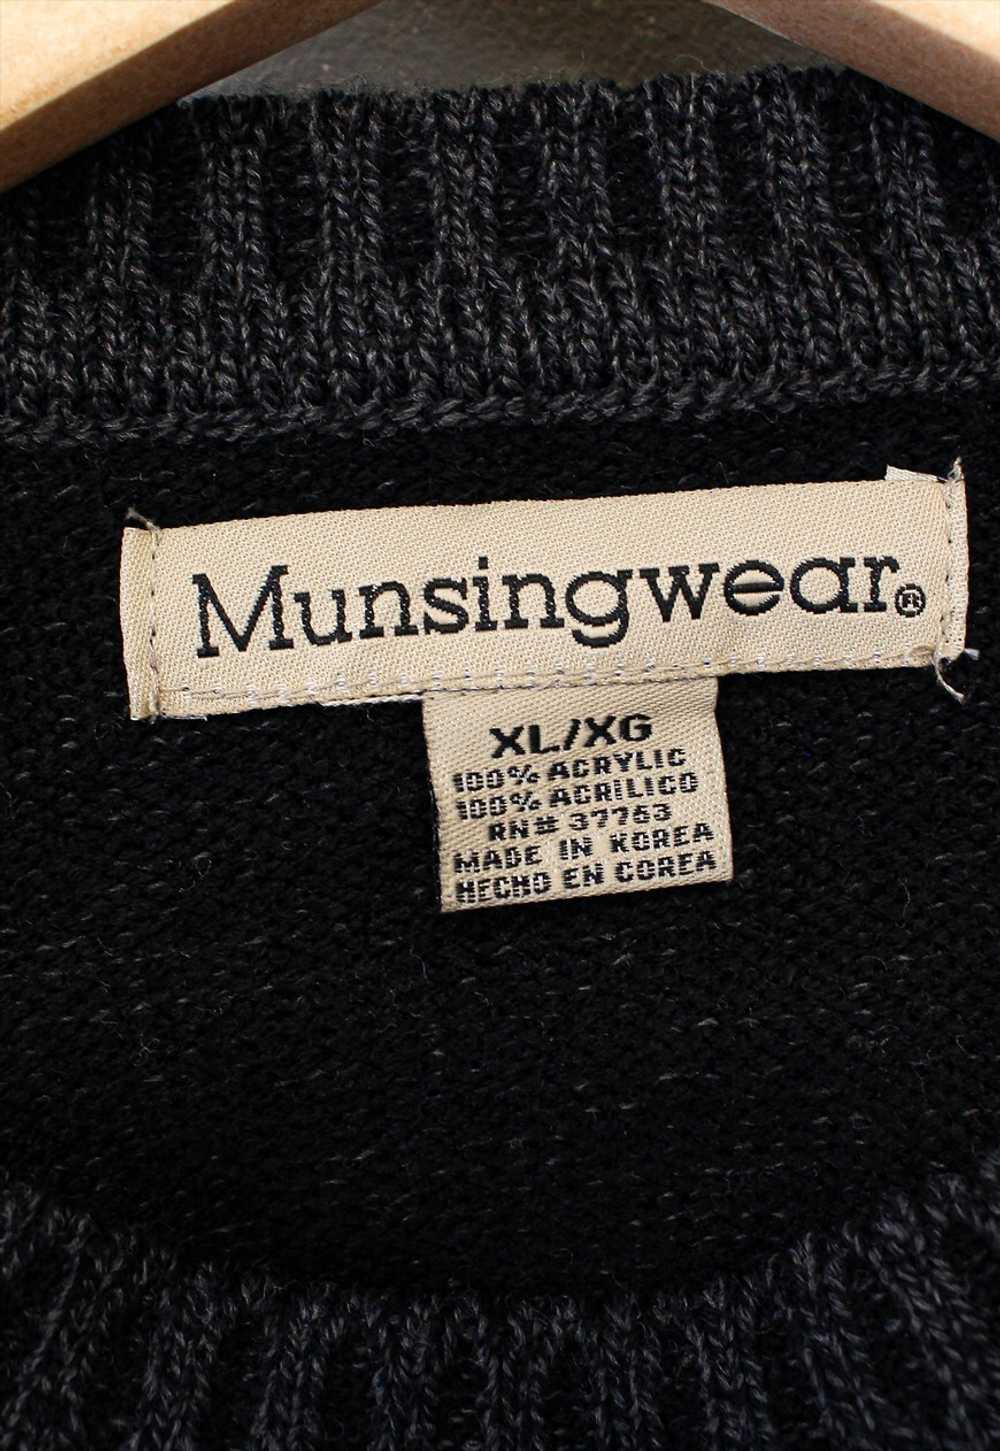 Vintage Knit Jumper Black With Patterns - image 4